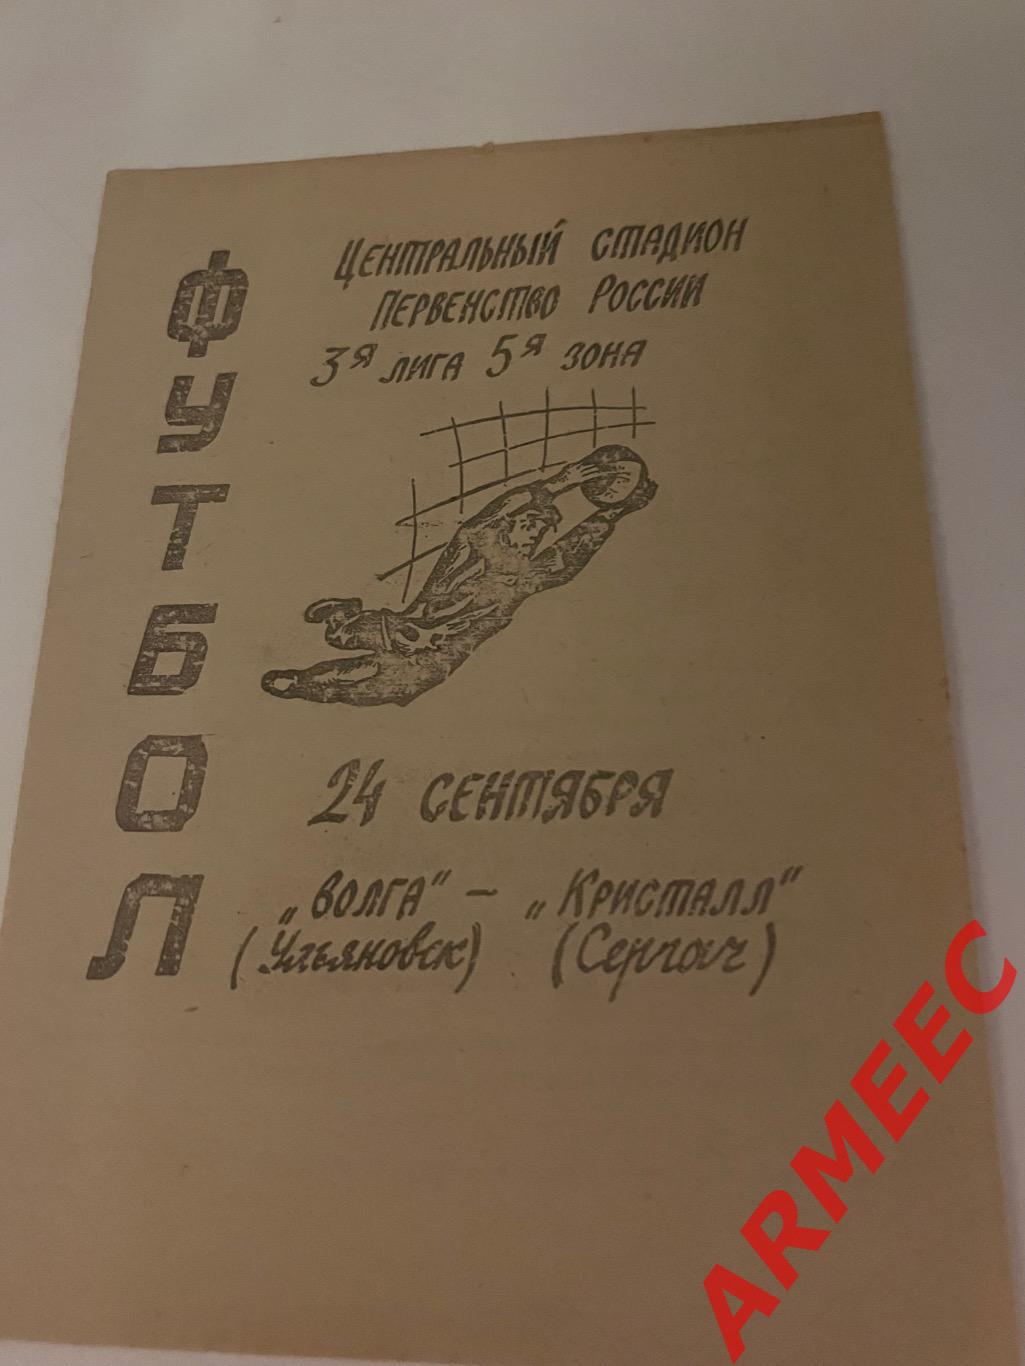 Волга (Ульяновск)-Кристалл (Сергач) 24.09.1995